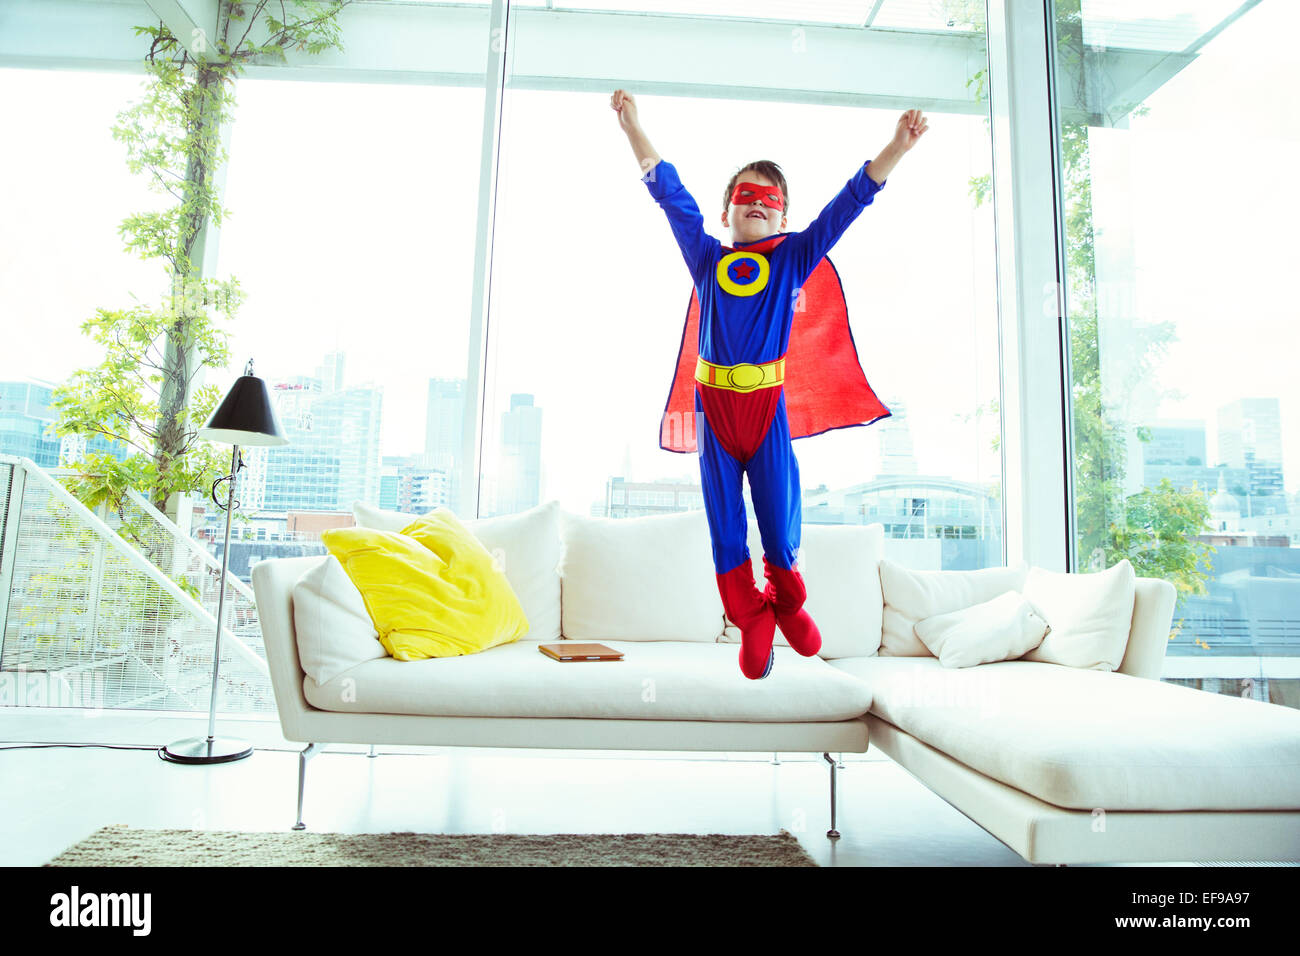 Junge Superhelden abspringen Sofa im Wohnzimmer Stockfoto